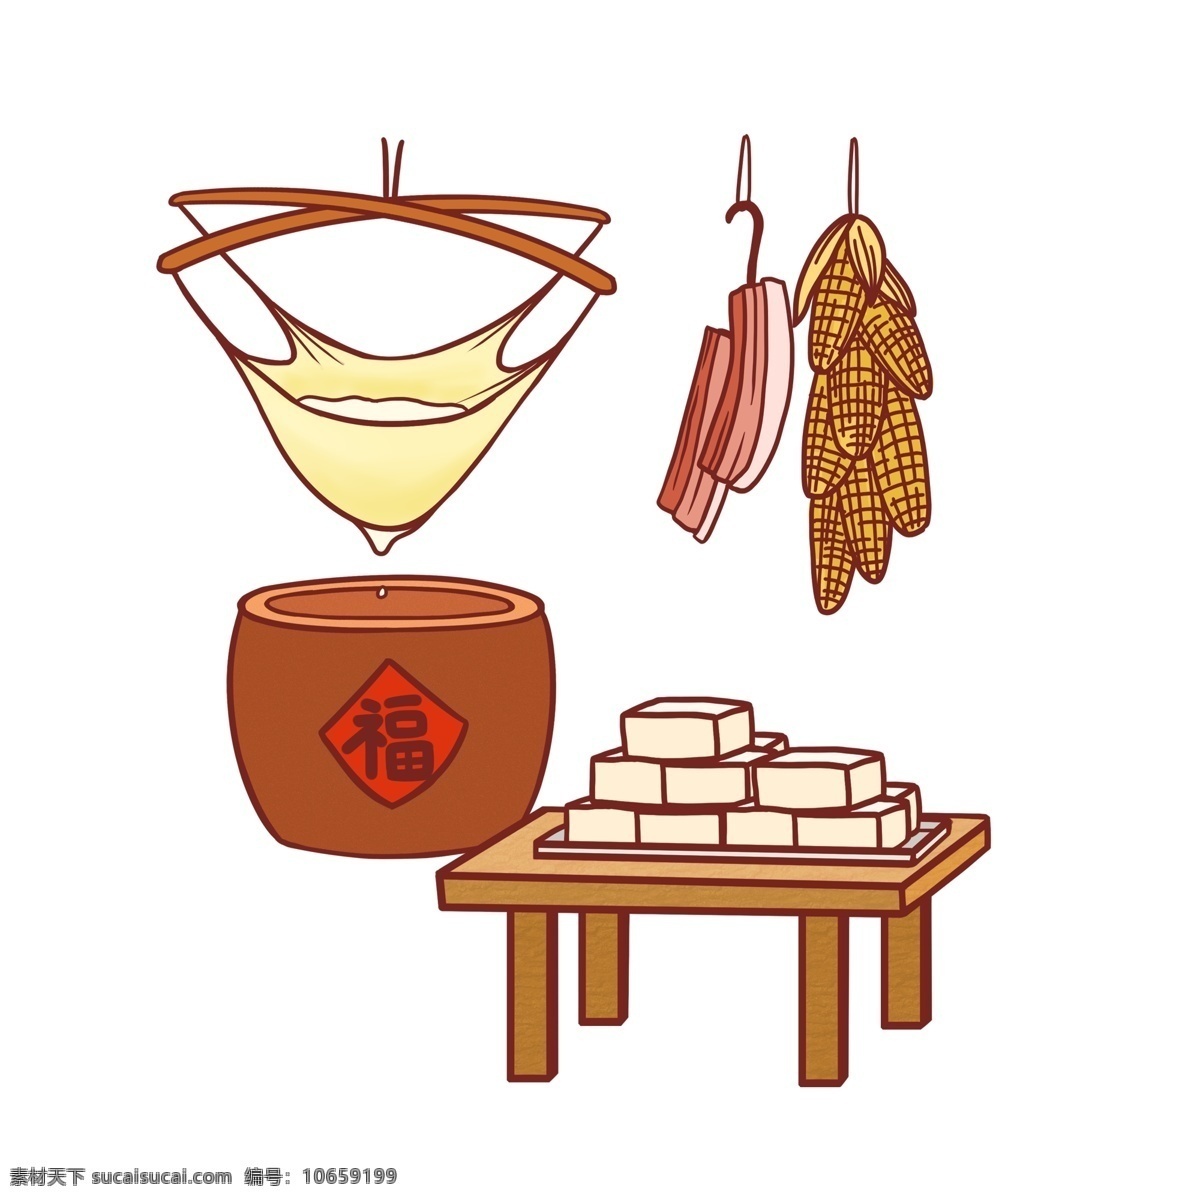 传统 新年 豆腐 制图 案 元素 福字 图案 年货 简约 玉米 做豆腐 手绘 手绘图案 元素装饰 装饰图案 元素设计 创意元素 手绘元素 psd元素